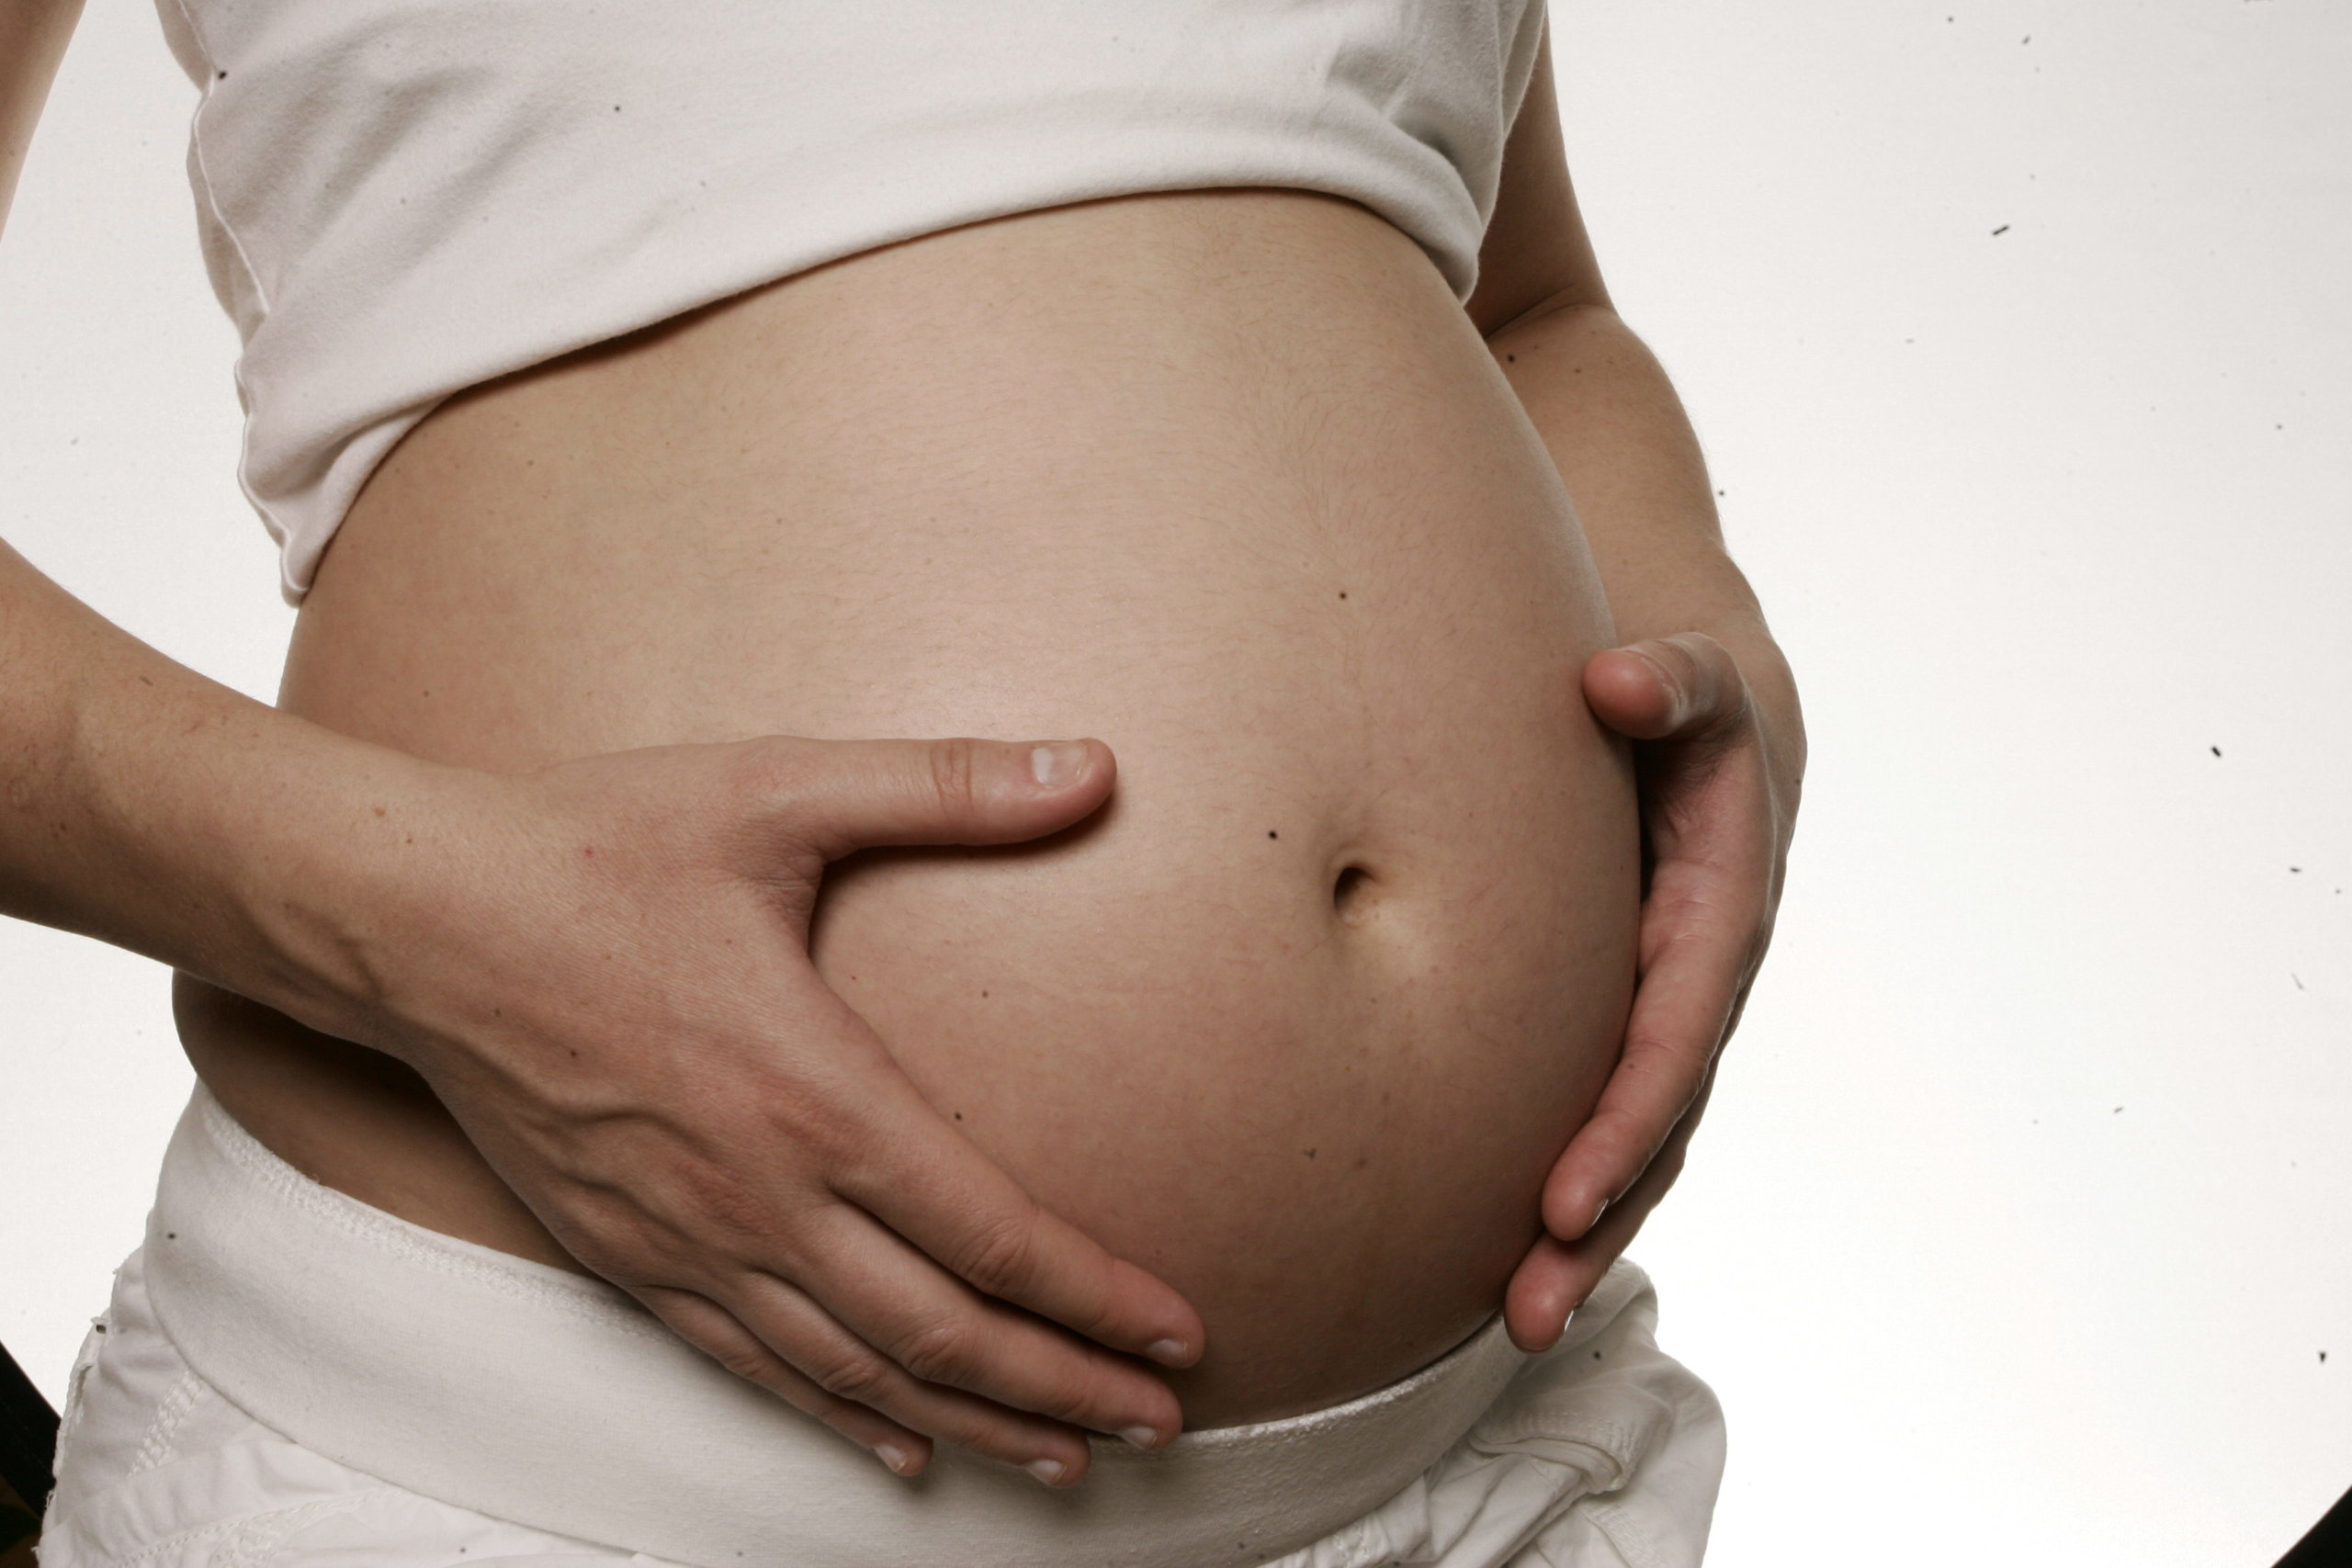 Tribunal Supremo rechaza pronunciarse sobre financiación de Planned Parenthood